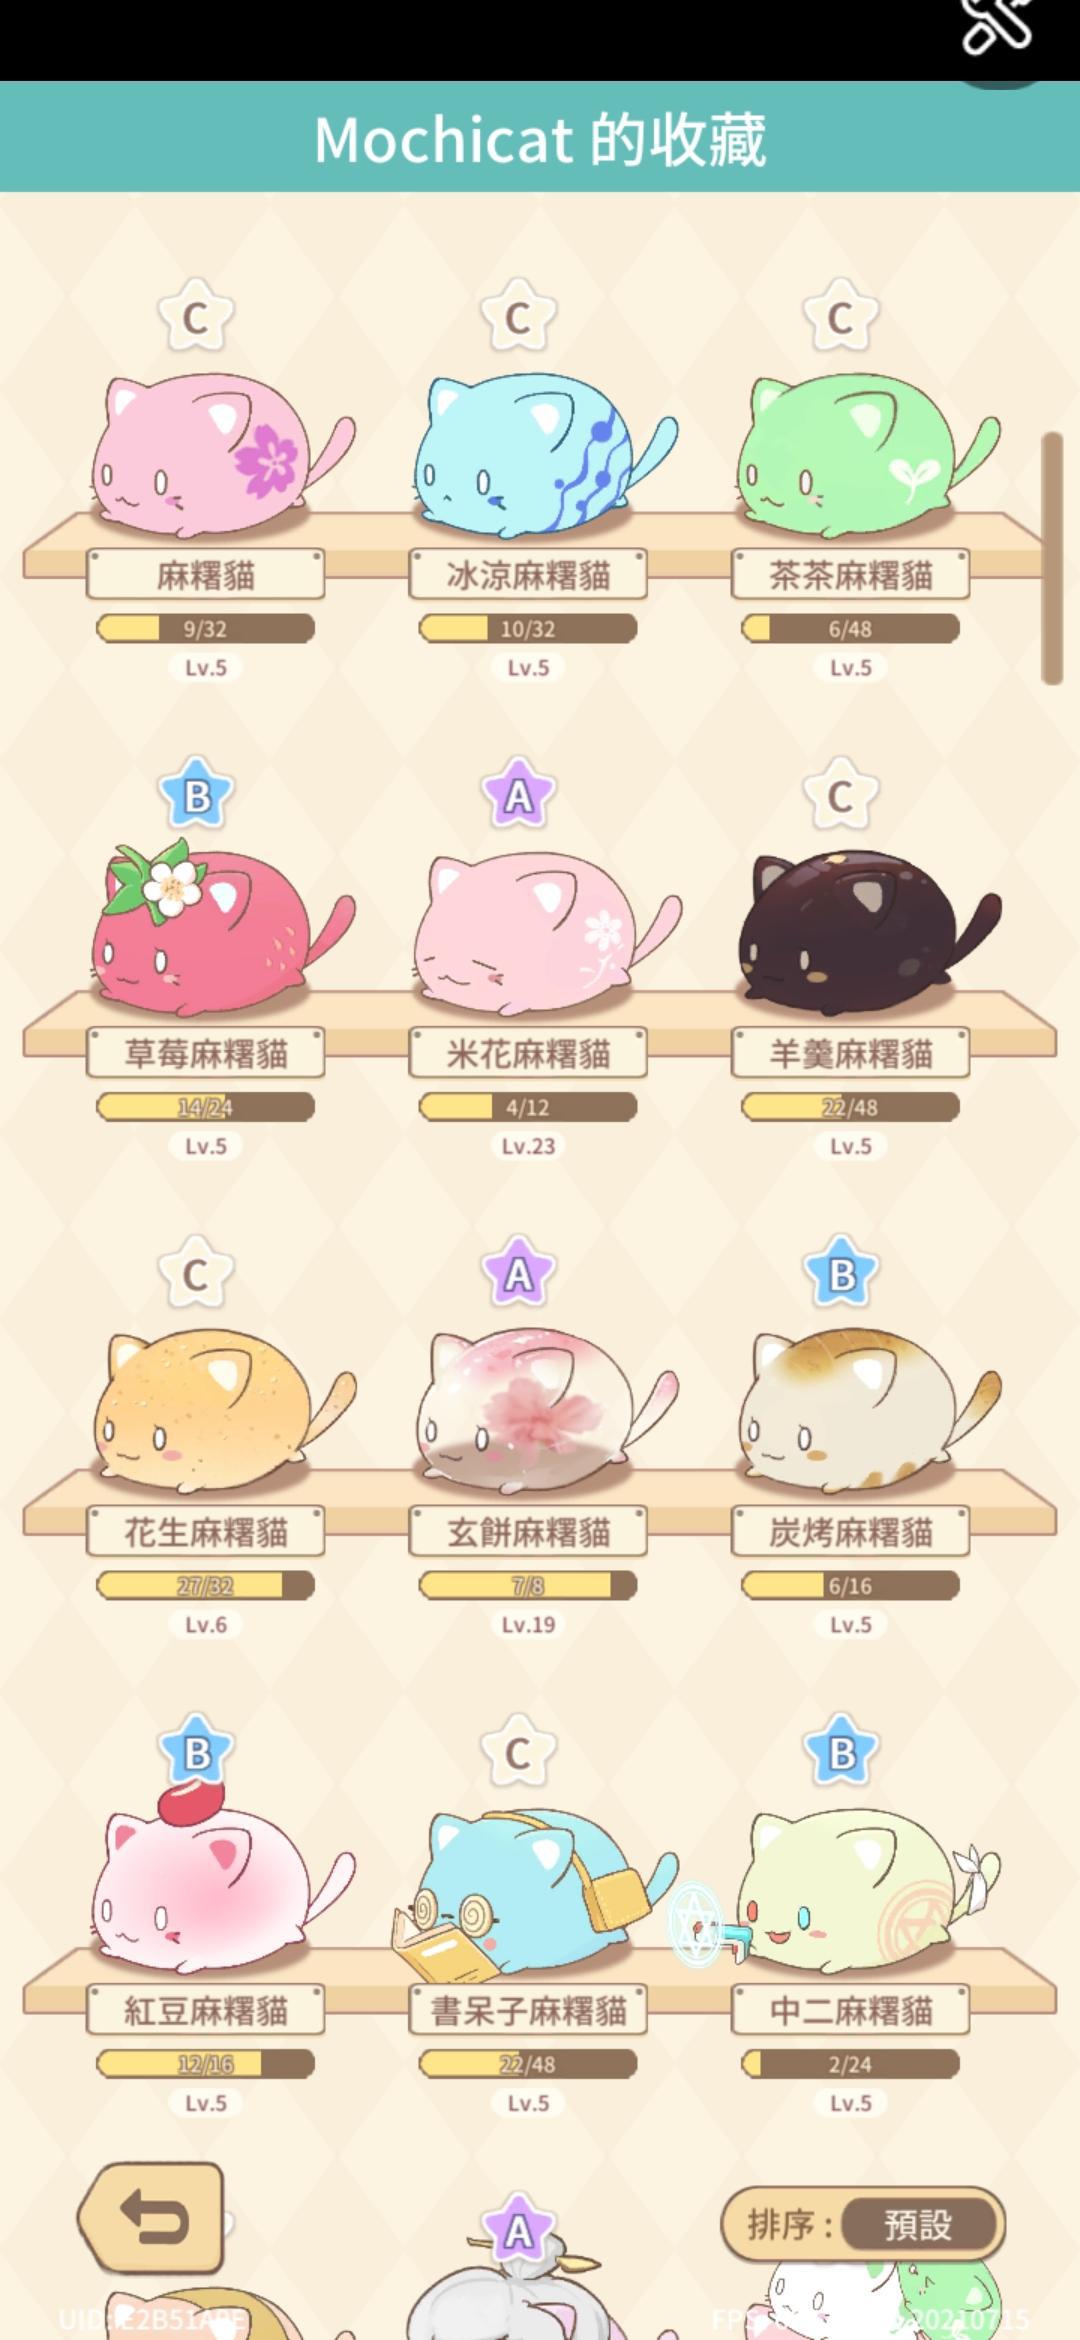 麻糬貓收藏 - 療癒的每一天 MochiCat Collection_游戏简介_图2